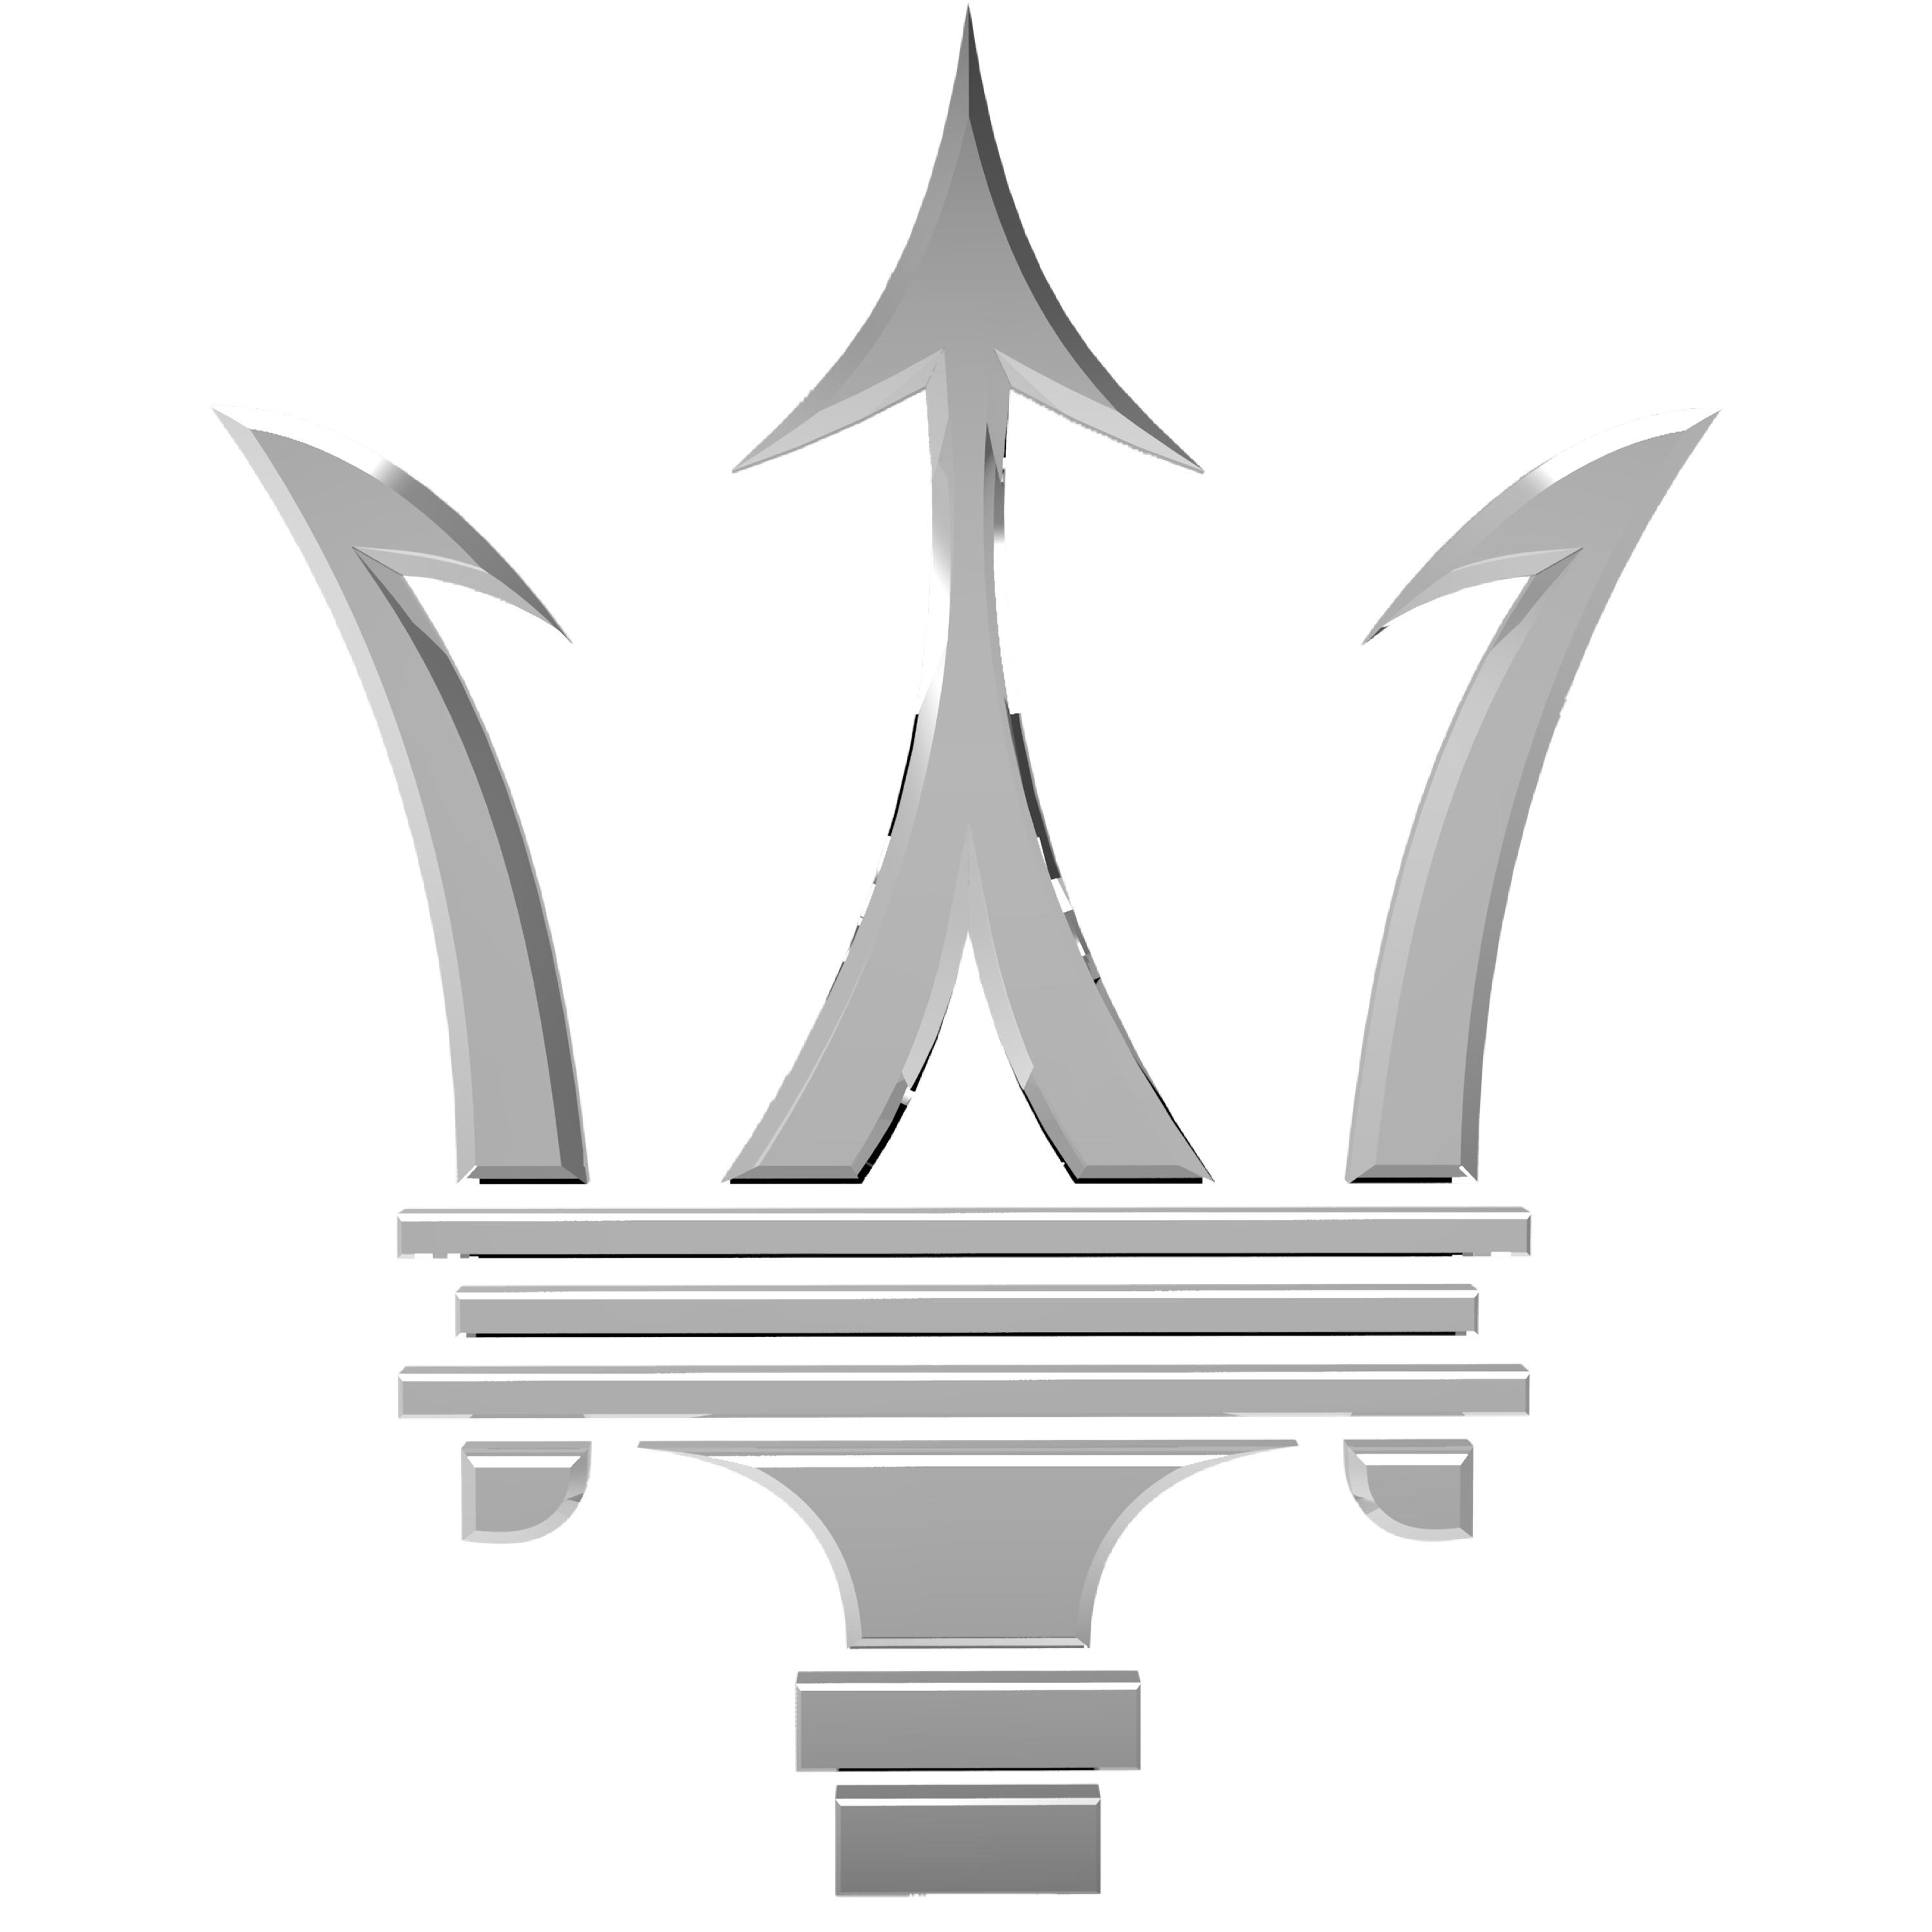 Maserati Emblem 1920x1080 (HD